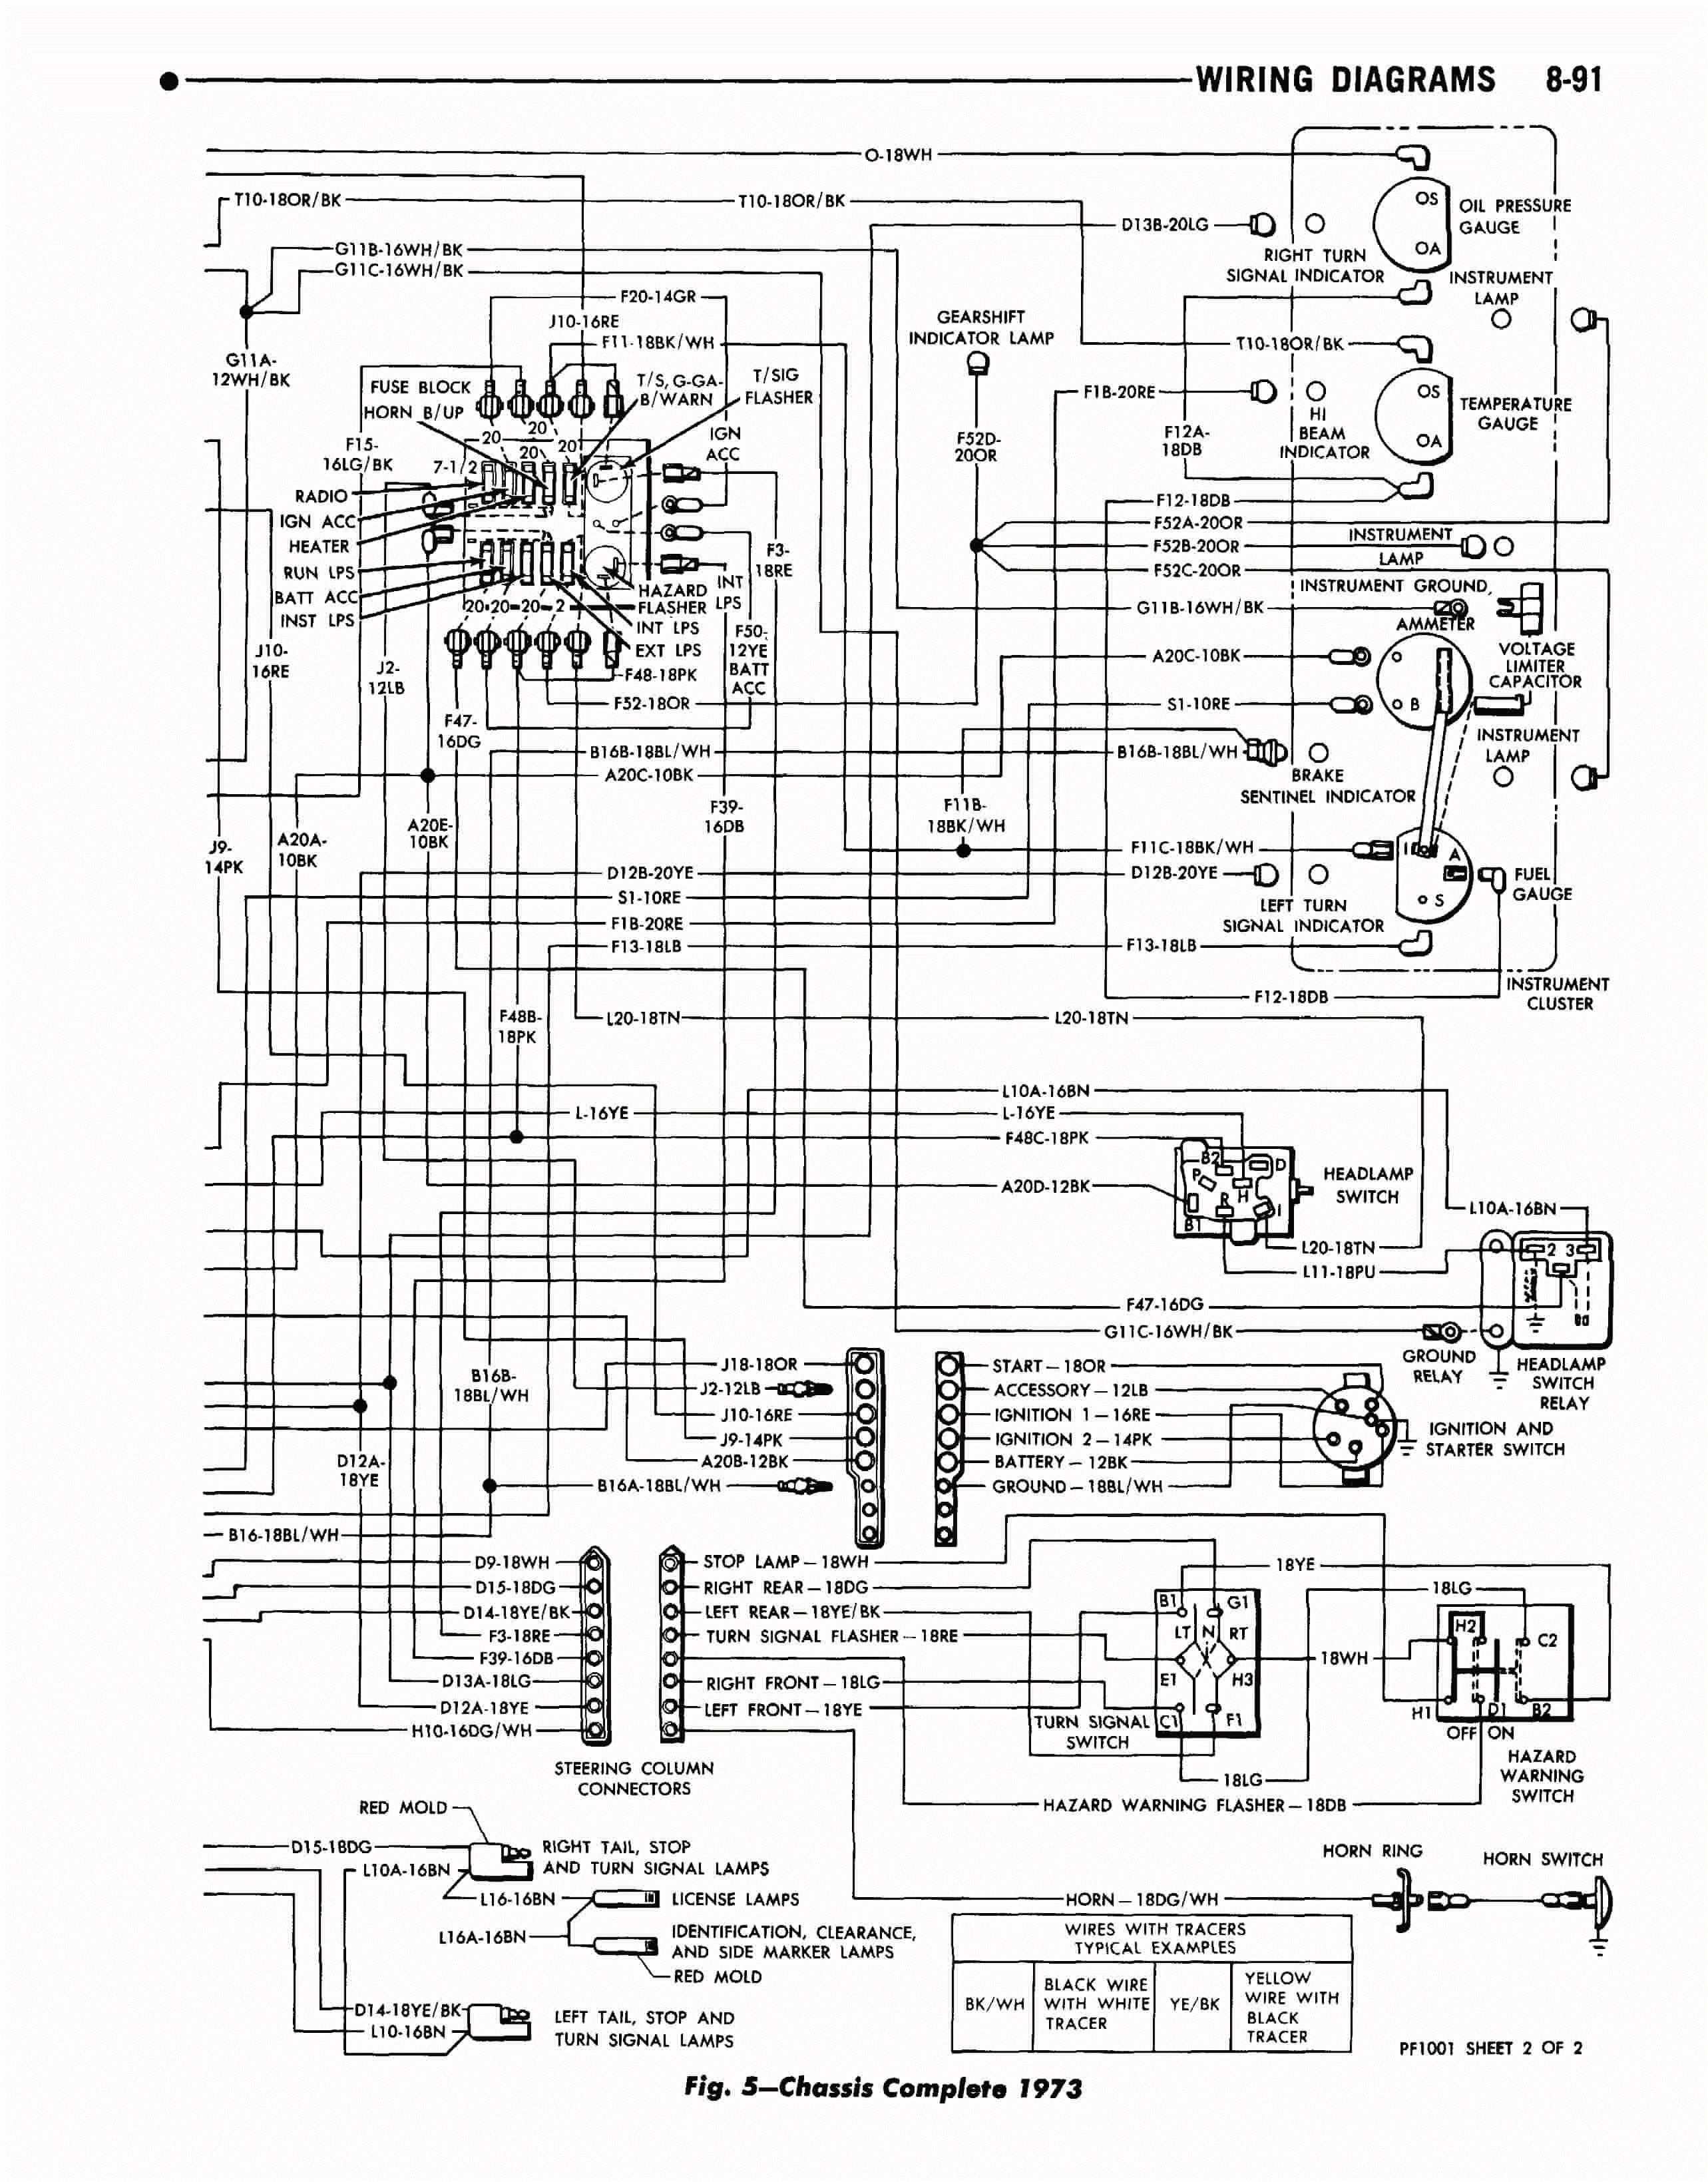 beaver wiring diagrams wiring diagram name beaver wiring diagrams